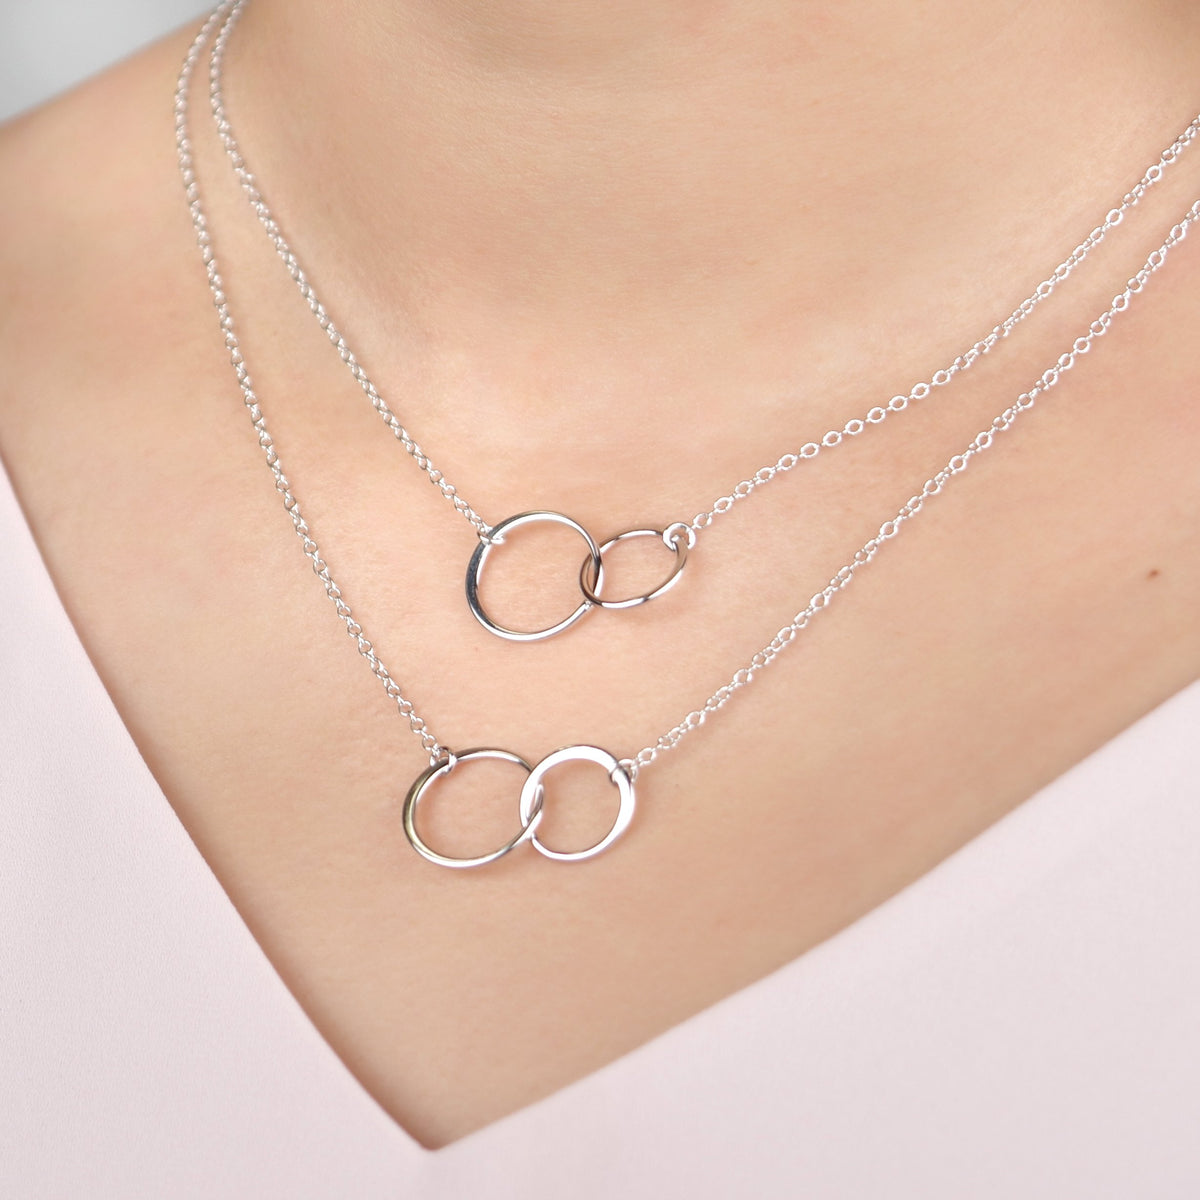 Aunt-Niece Double Circles Necklace Set - Dear Ava, Jewelry / Necklaces / Pendants